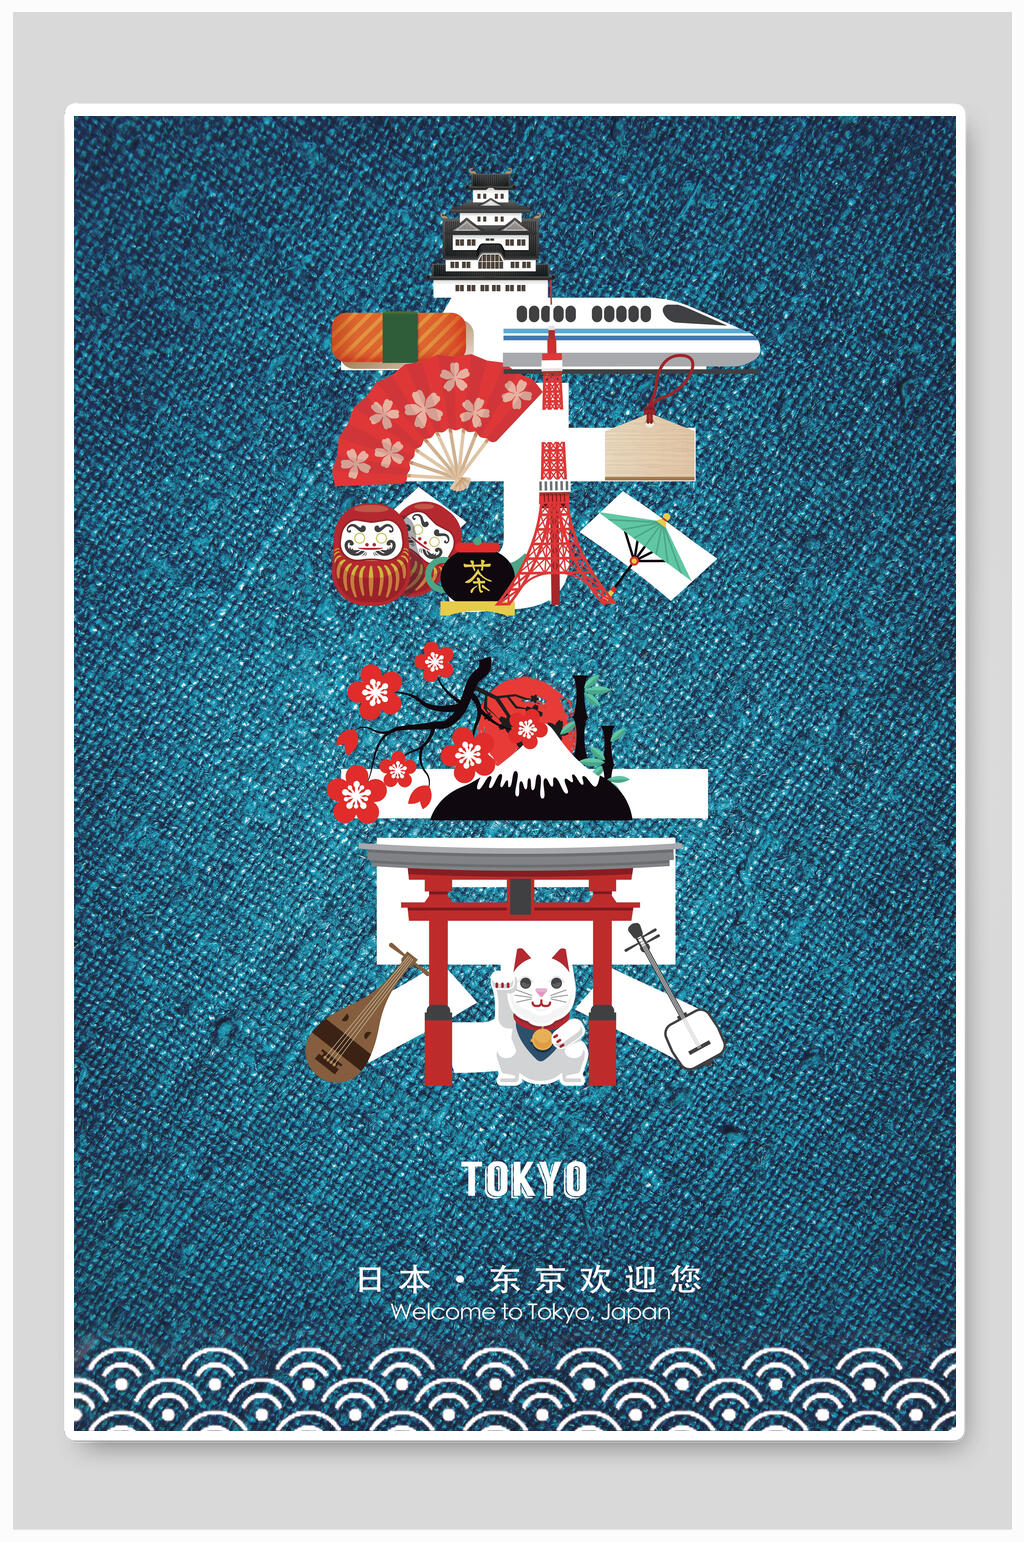 和风简约日本东京旅游海报素材